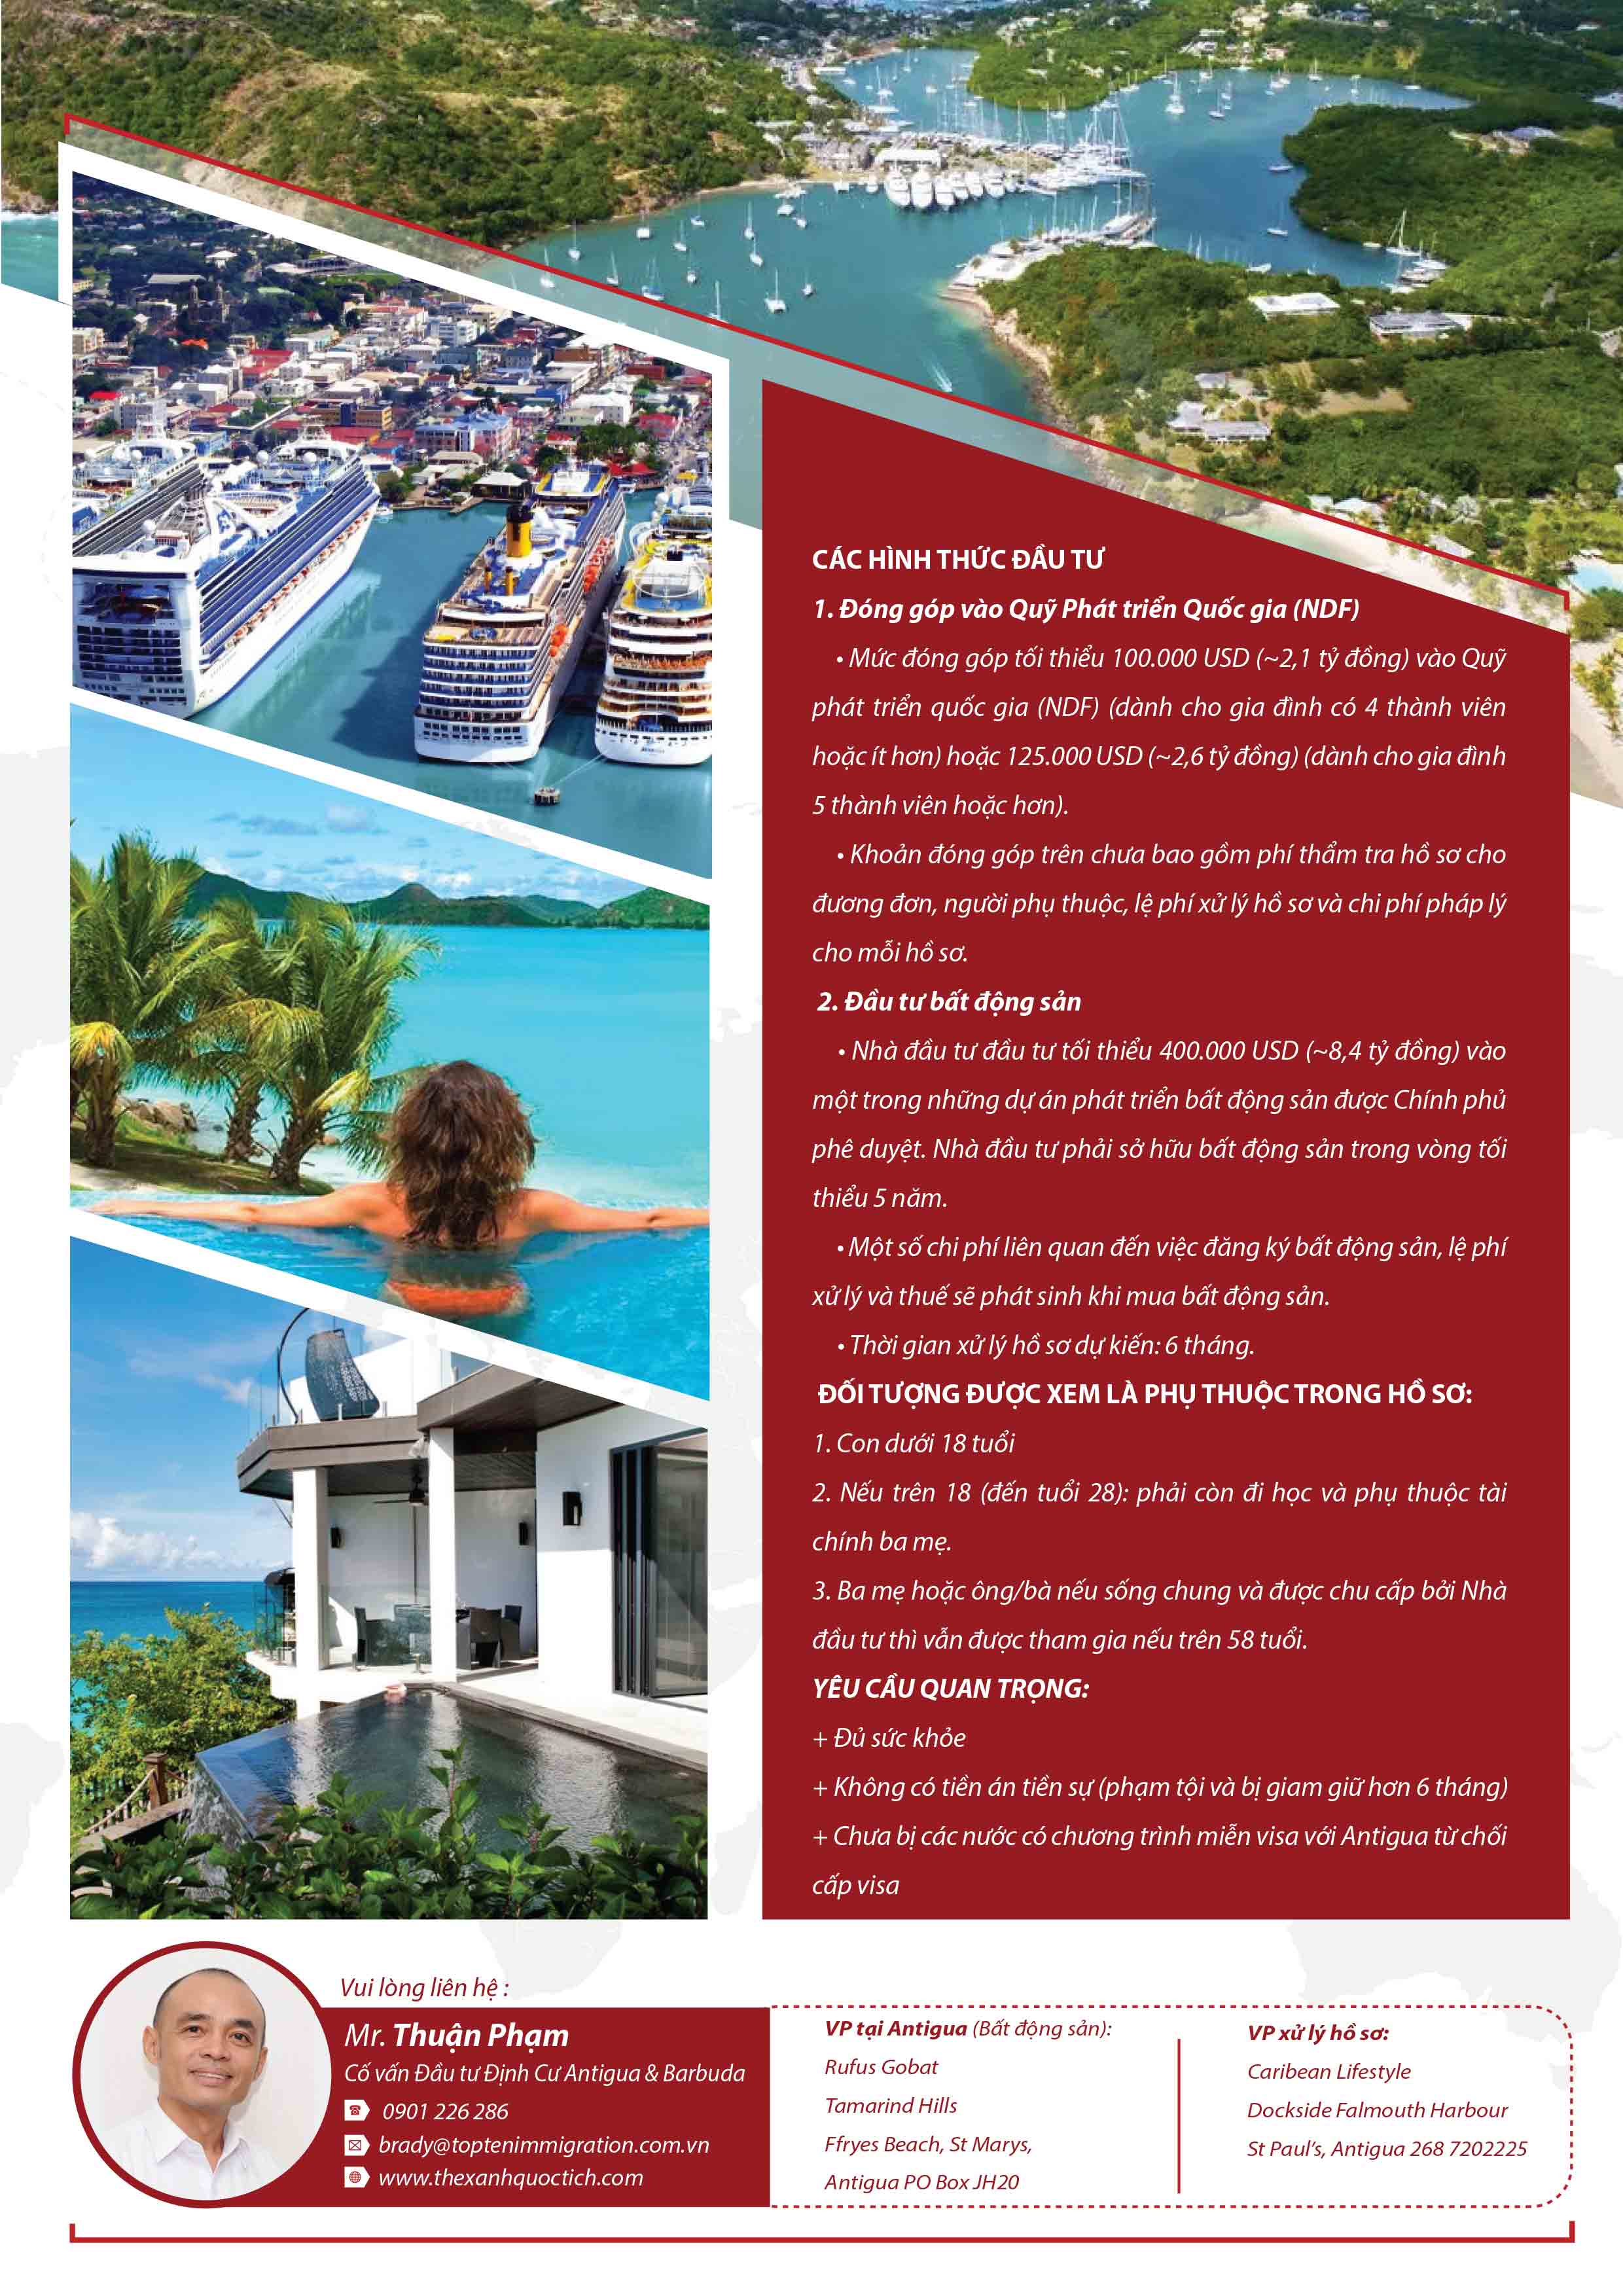 Chương trình Đầu tư nhập quốc tịch hộ chiếu Antigua